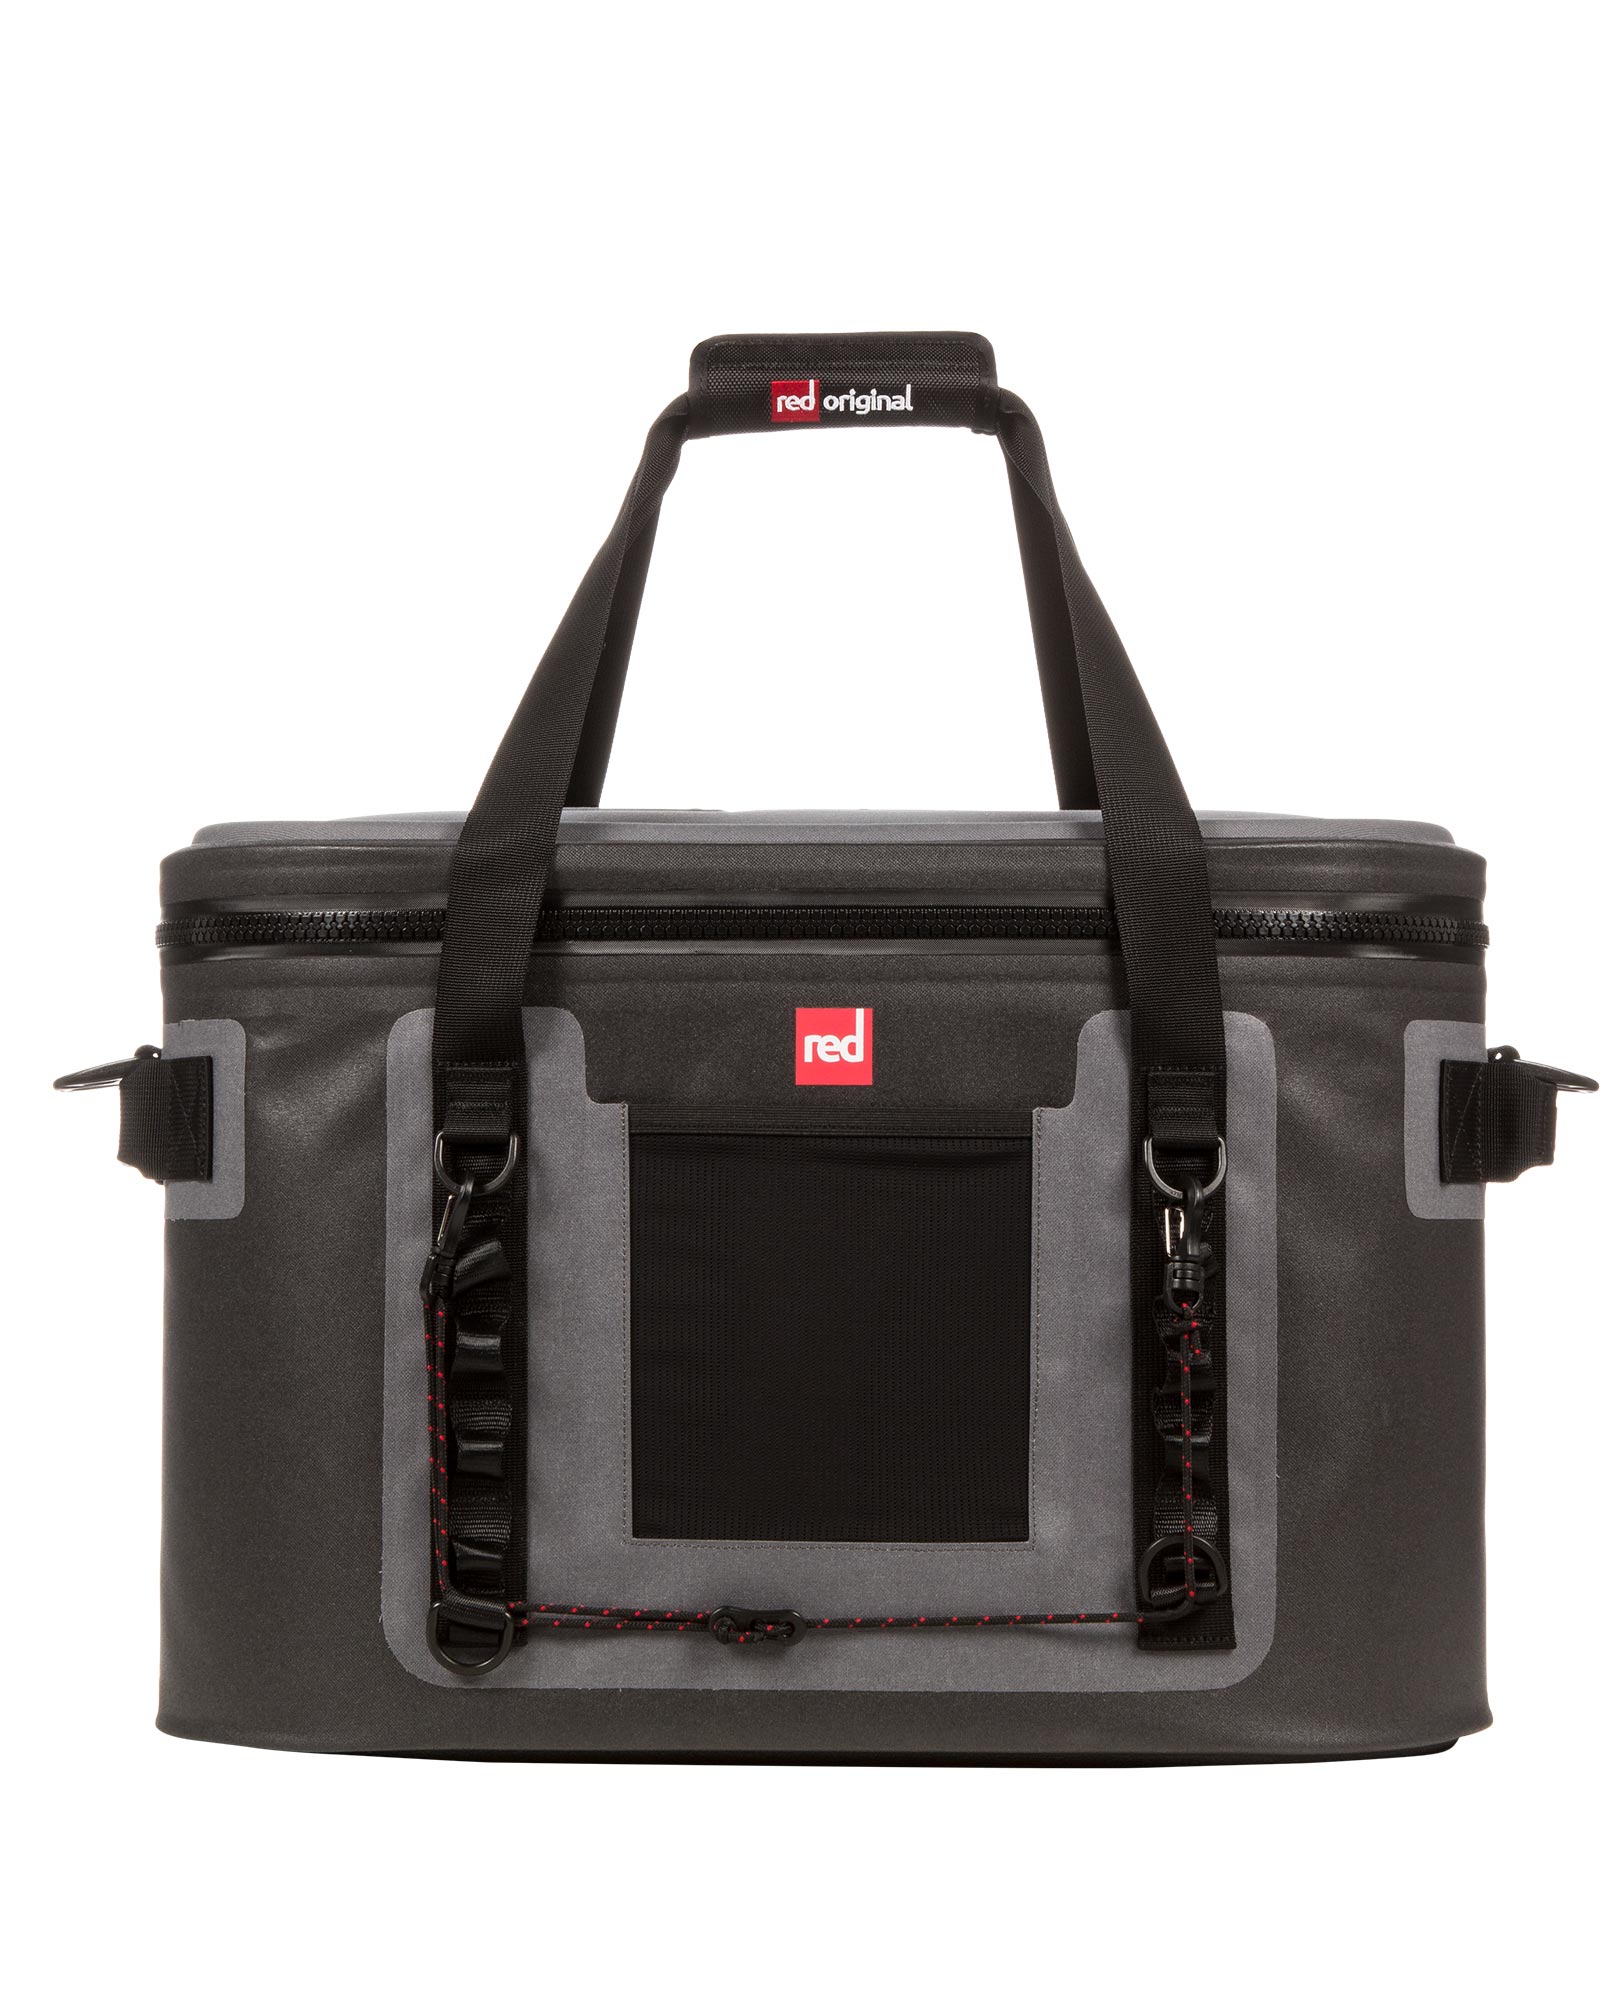 Red Cooler Bag 30L - Grey